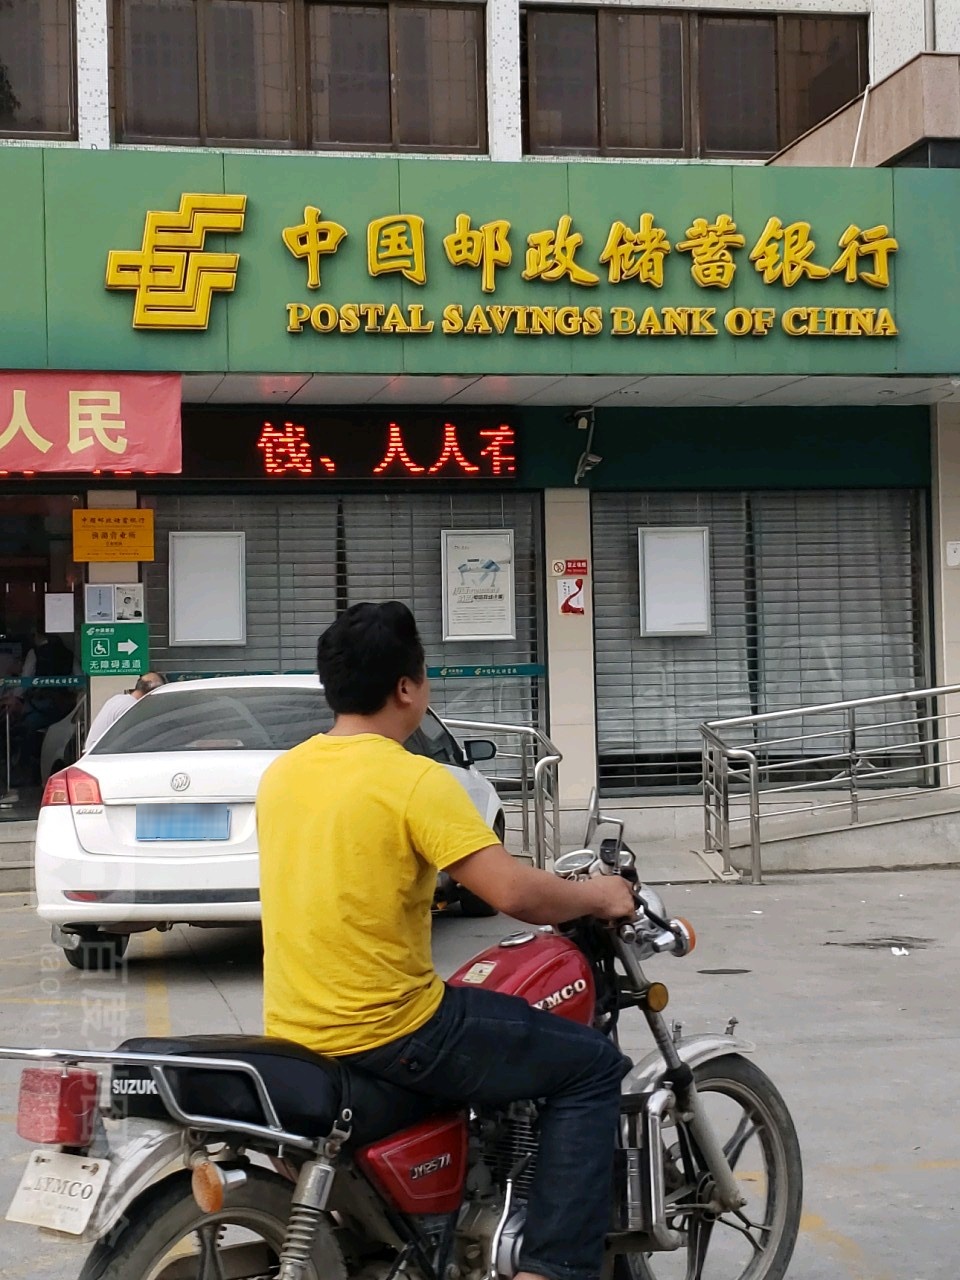 中国邮政储蓄银行24小时自动助银行(渔湖营业所)